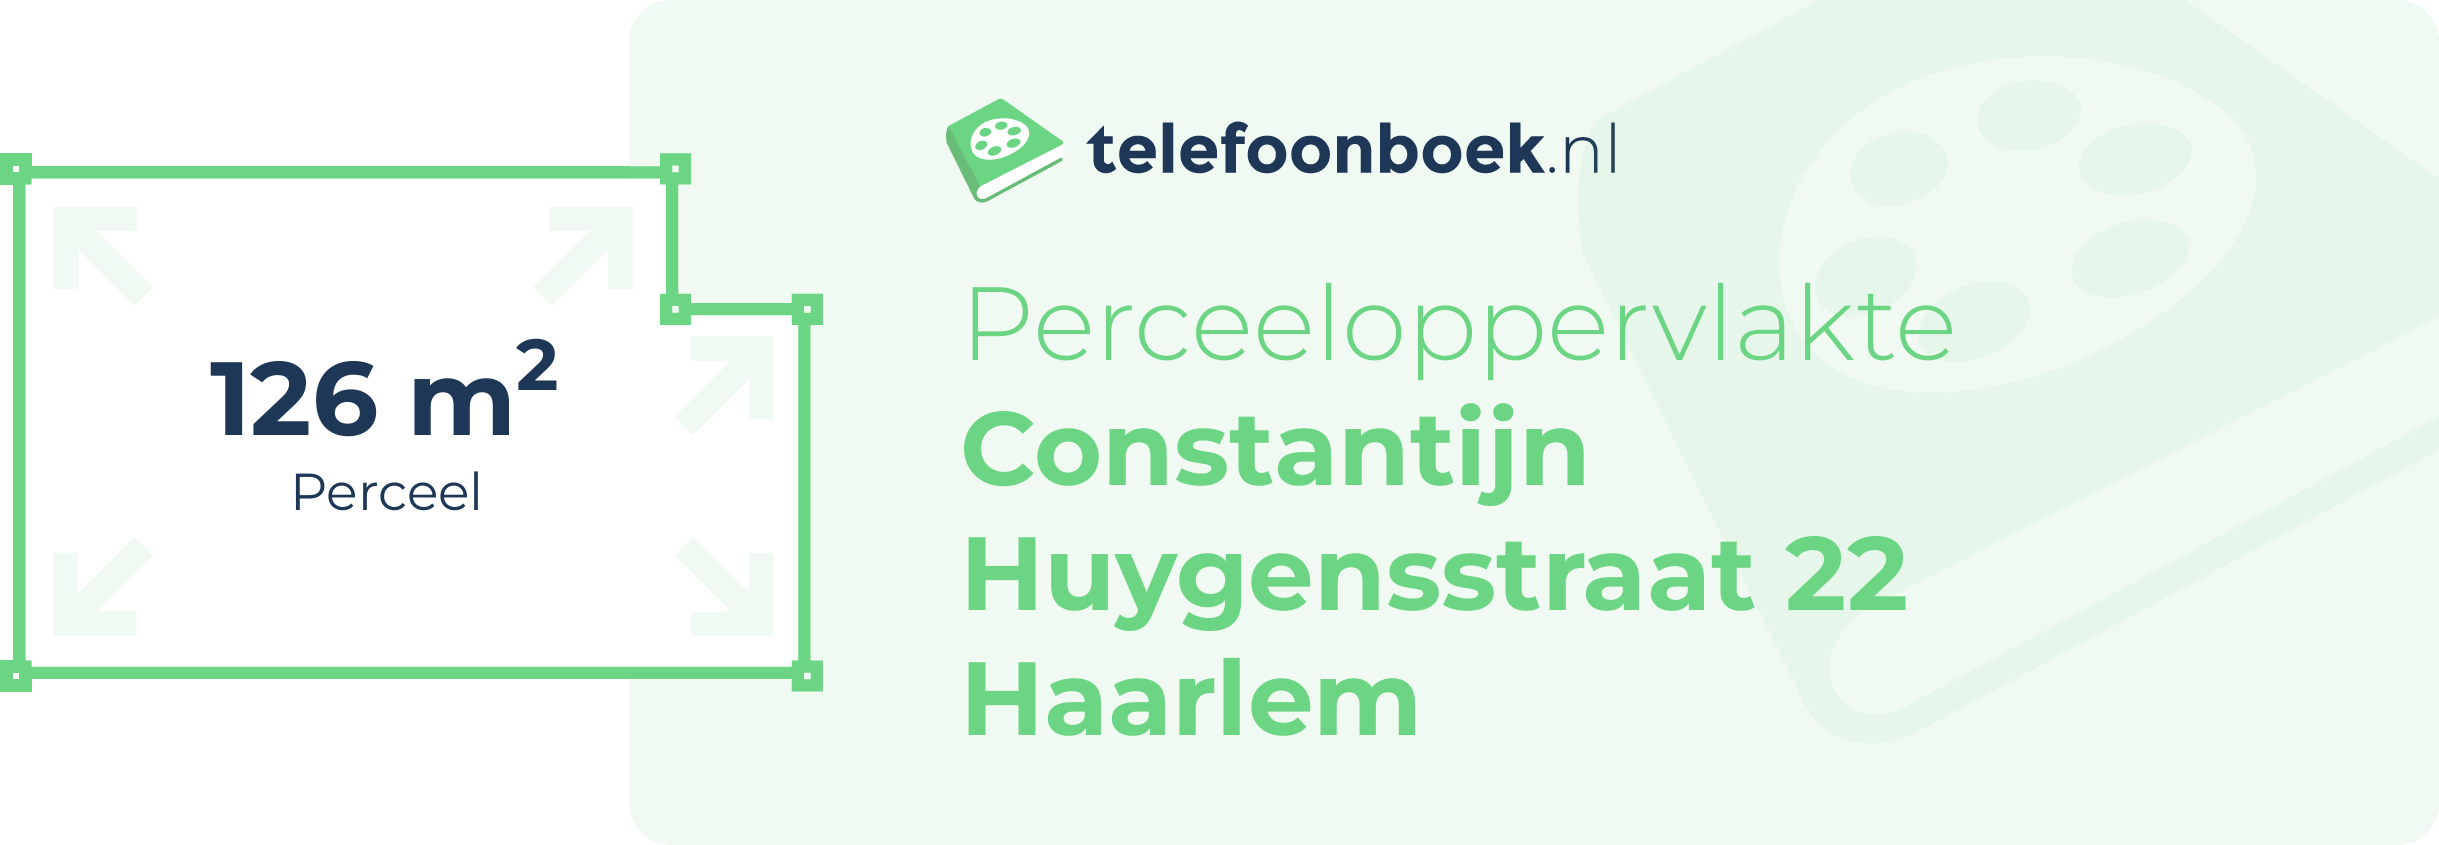 Perceeloppervlakte Constantijn Huygensstraat 22 Haarlem